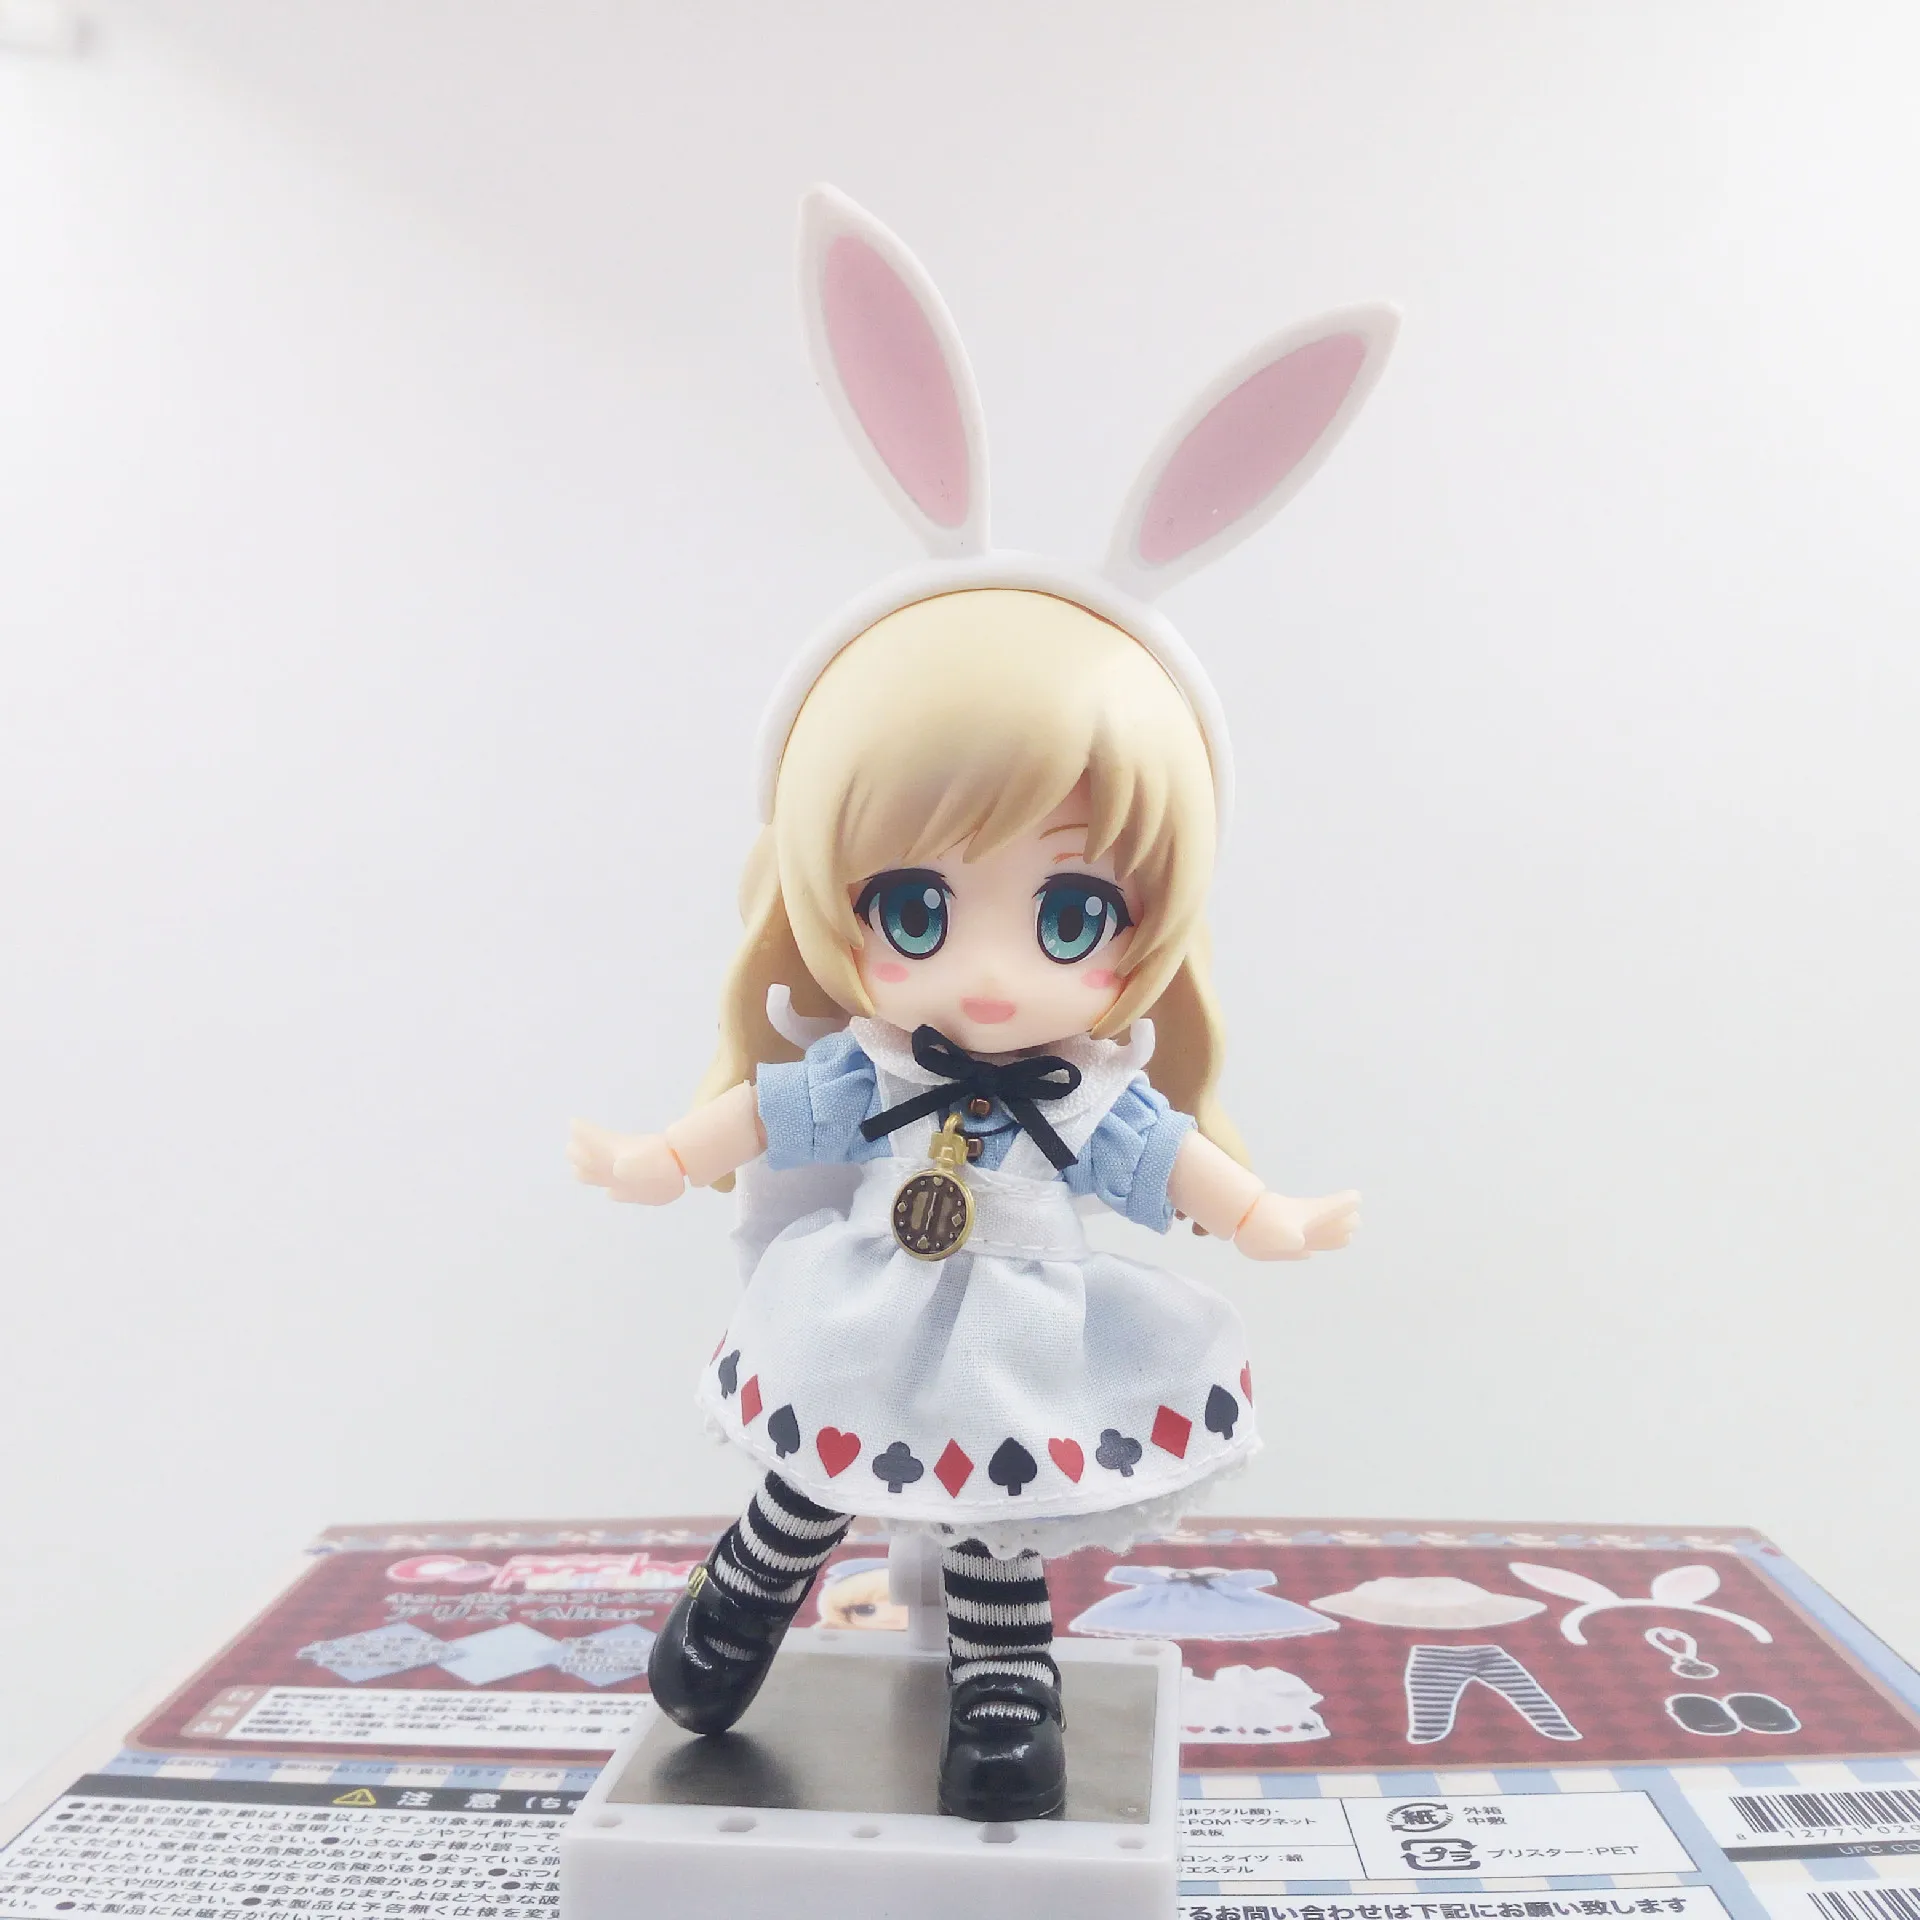 Cu-poche друзья Алиса из Nendoroid кукла ПВХ фигурка Коллекционная модель игрушки 13 см